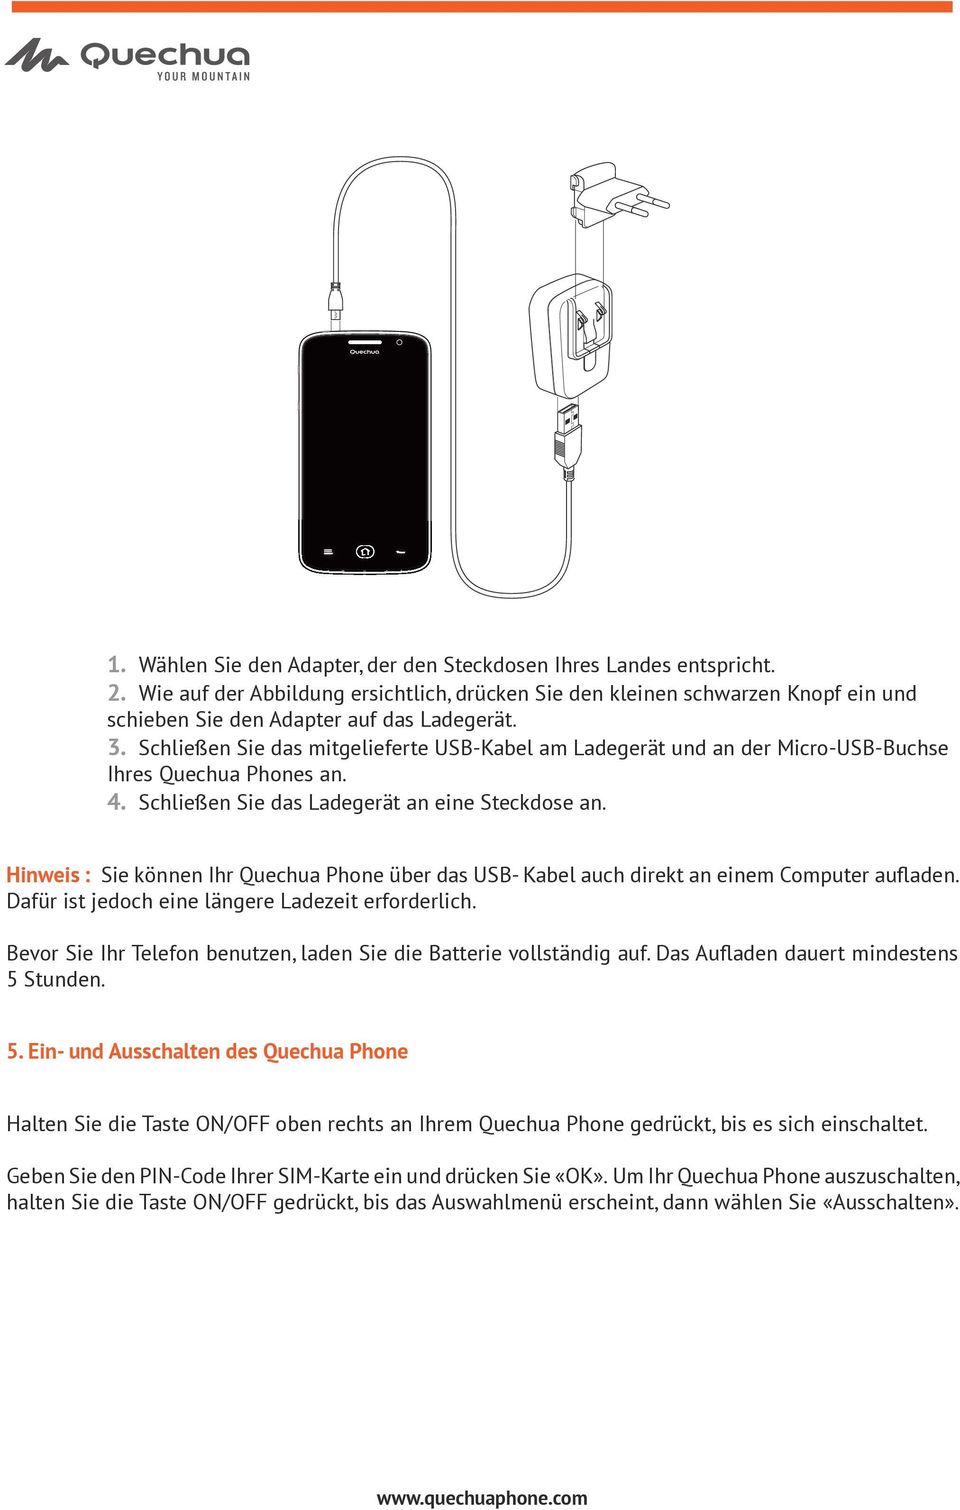 Hinweis : Sie können Ihr Quechua Phone über das USB- Kabel auch direkt an einem Computer aufladen. Dafür ist jedoch eine längere Ladezeit erforderlich.